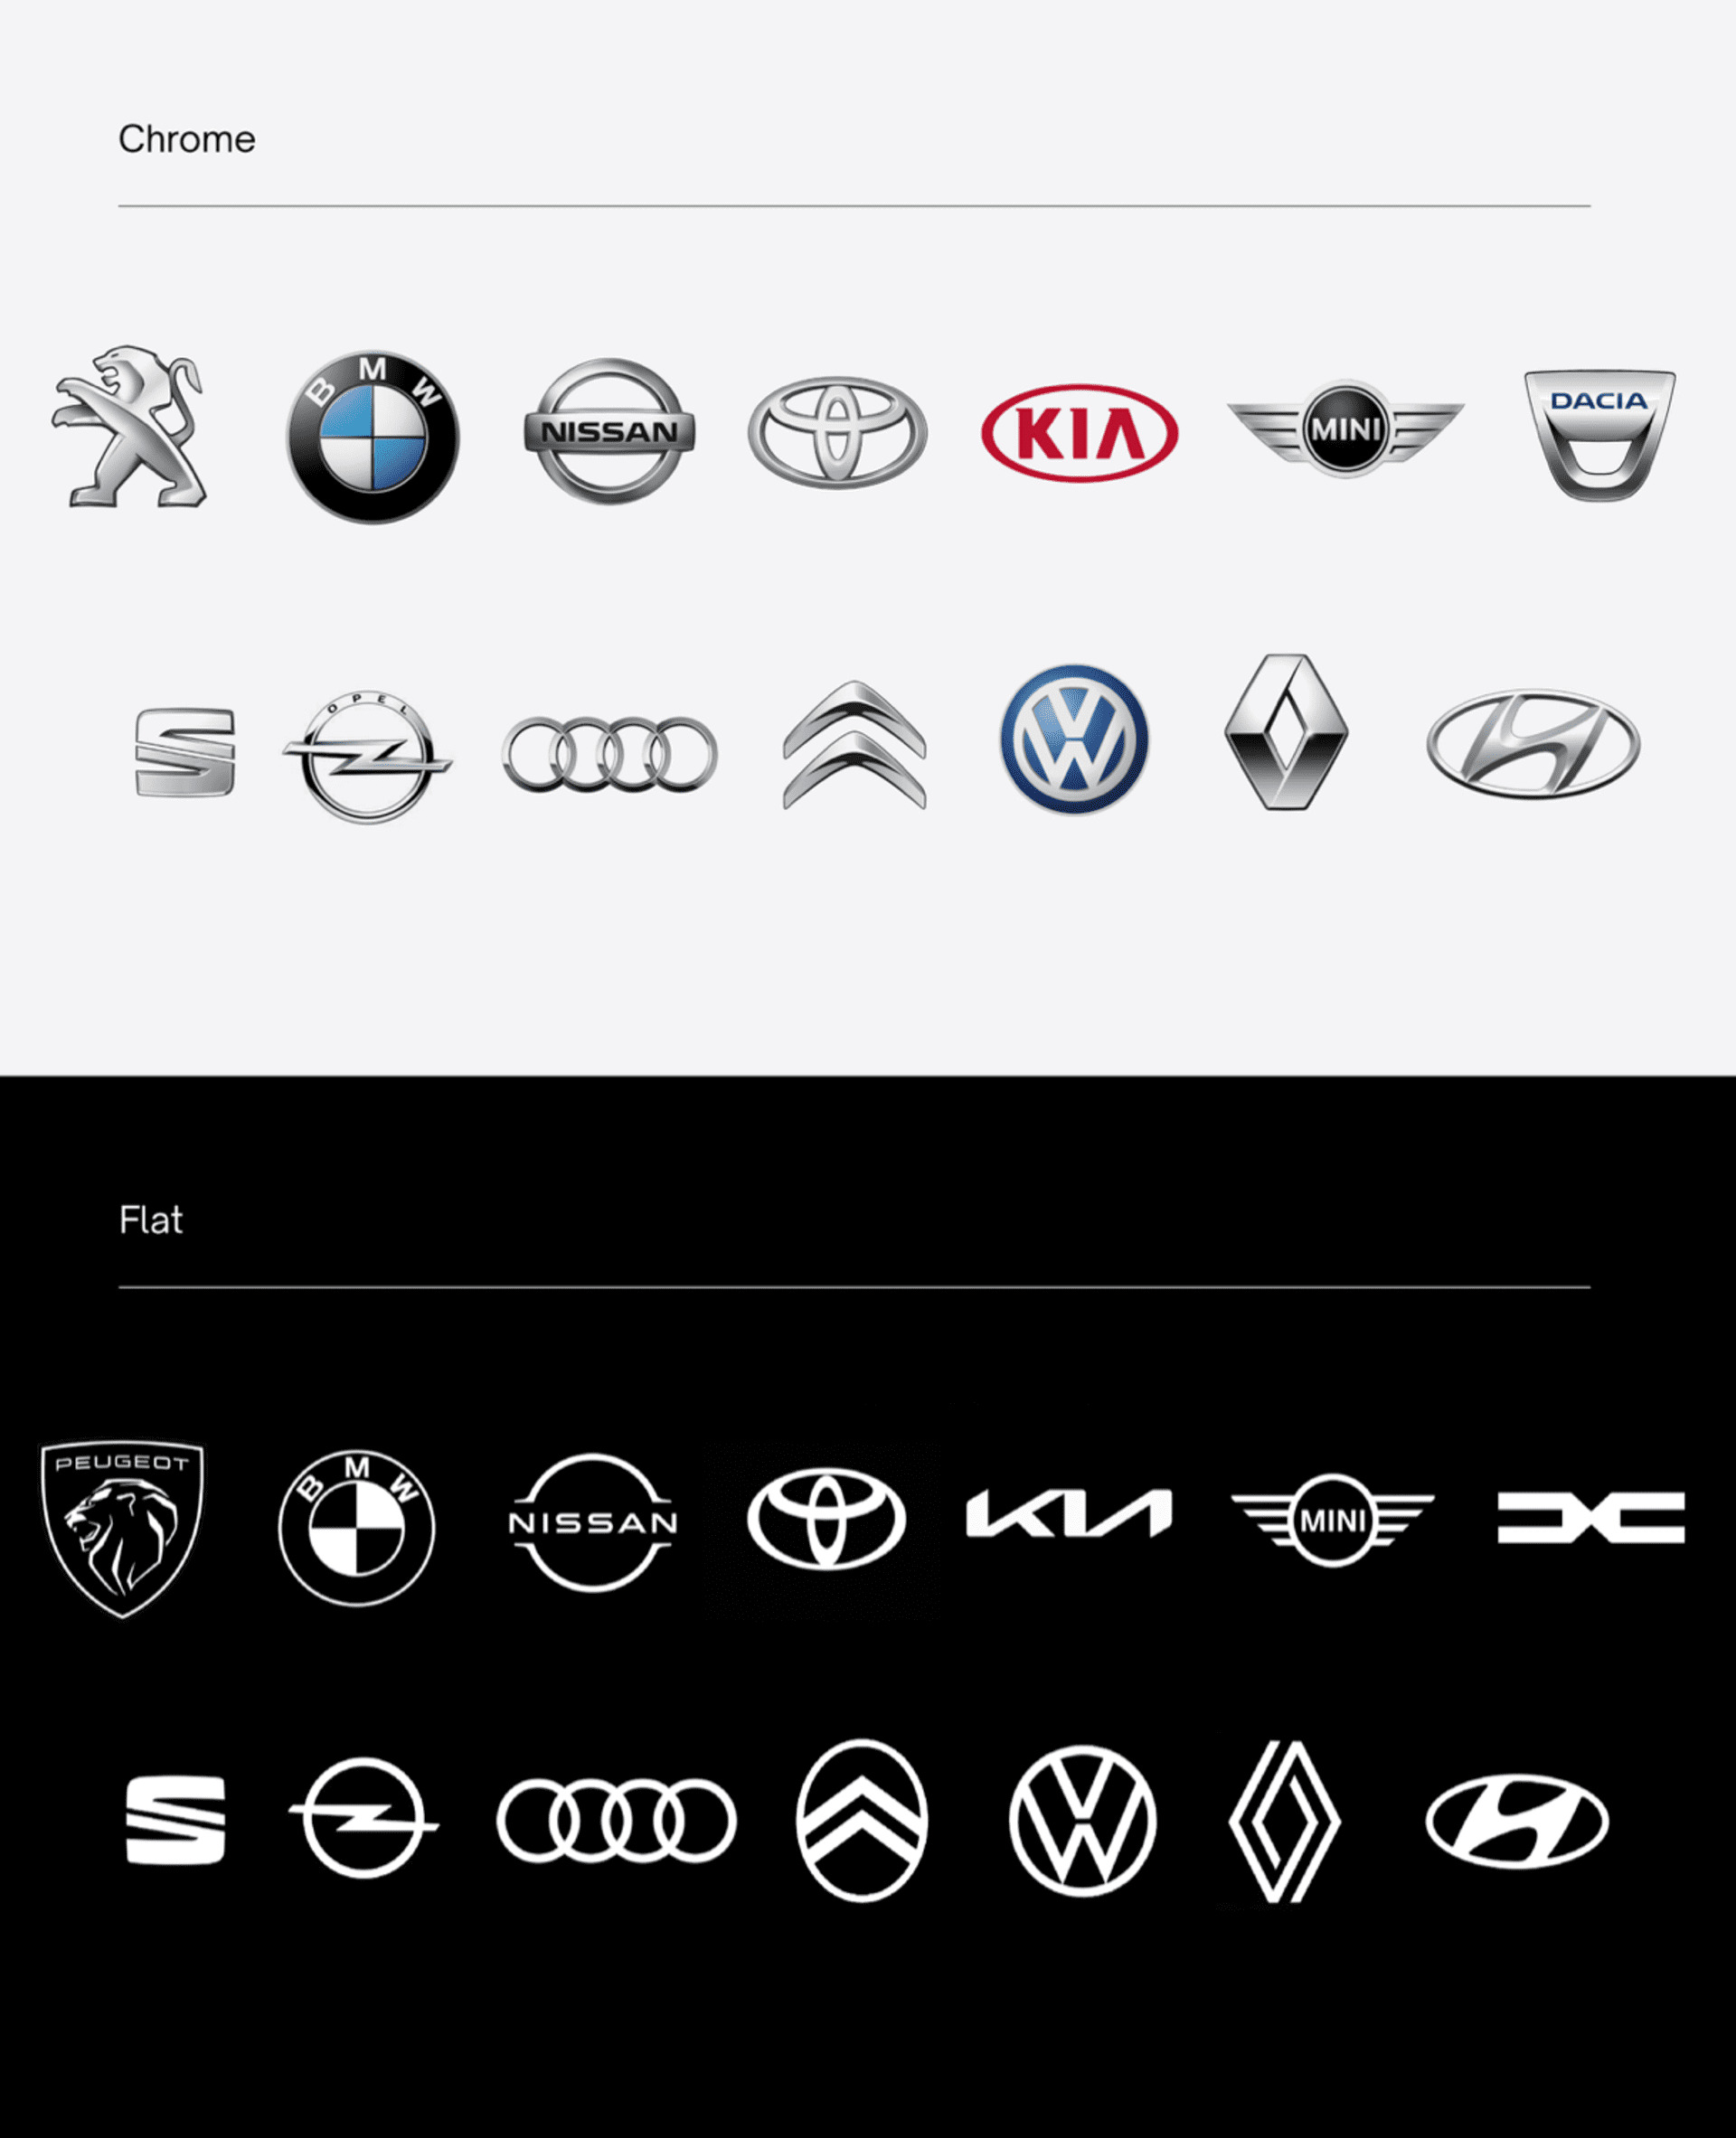 Citroën : connaissez-vous l'histoire derrière le logo aux chevrons ?